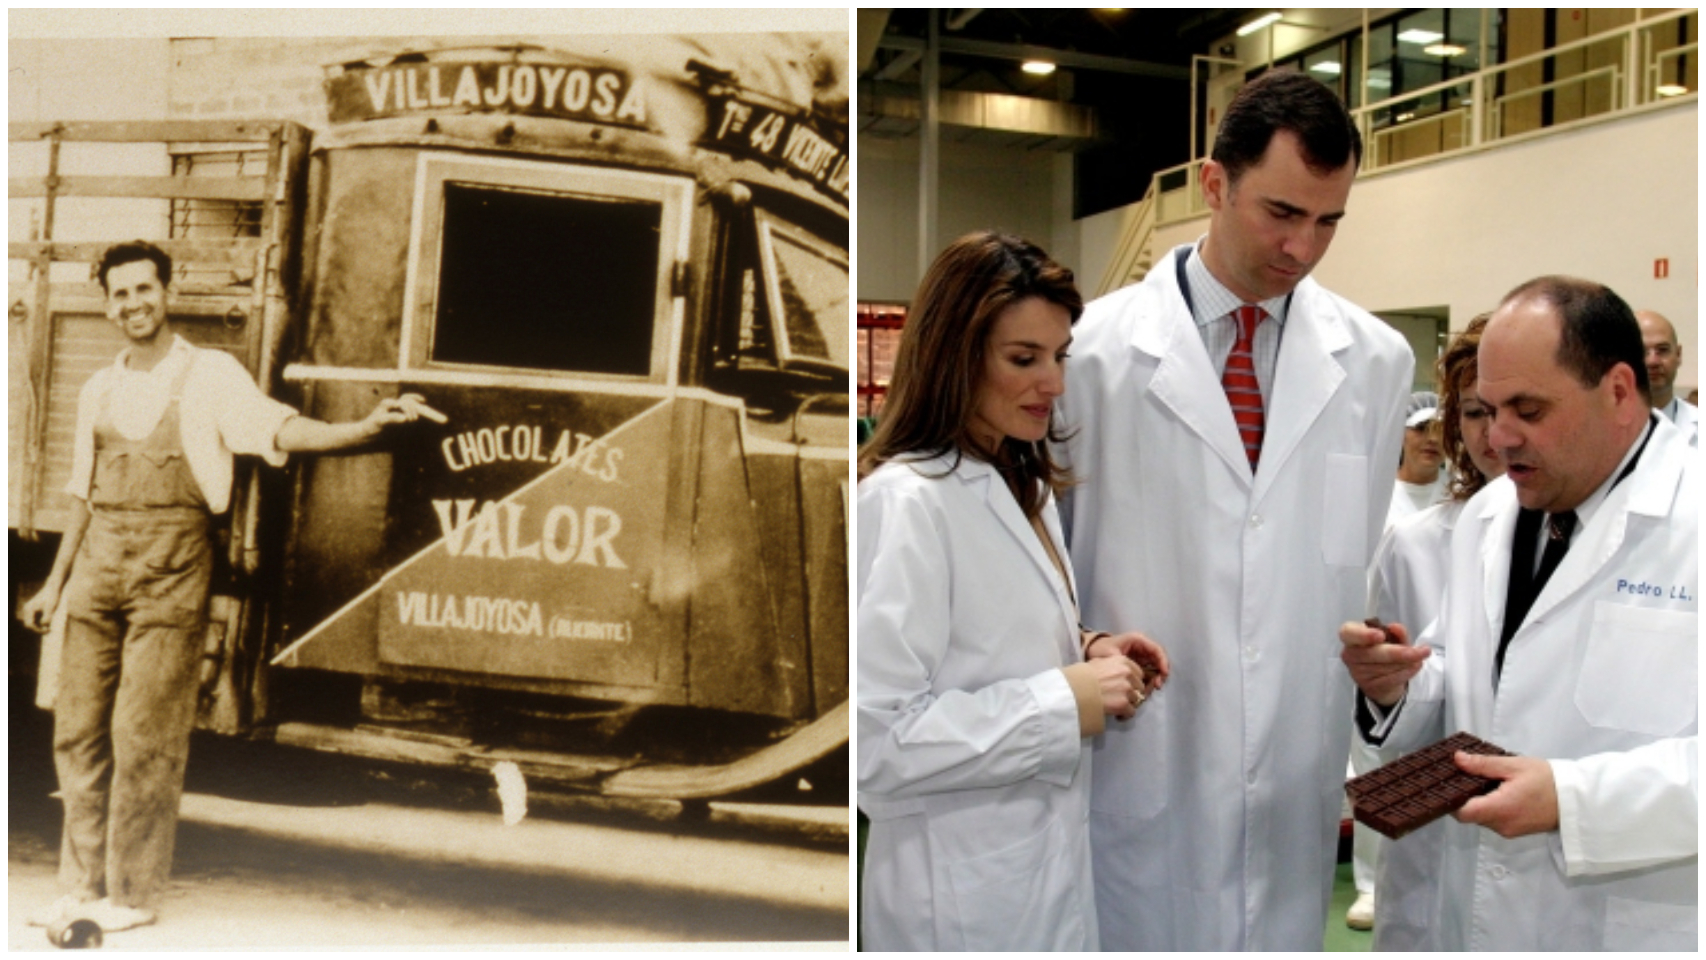 A la izquierda, la primera camioneta de Valor. A la derecha, los entonces príncipes de Asturias visitan la fábrica chocolatera, en 2006.